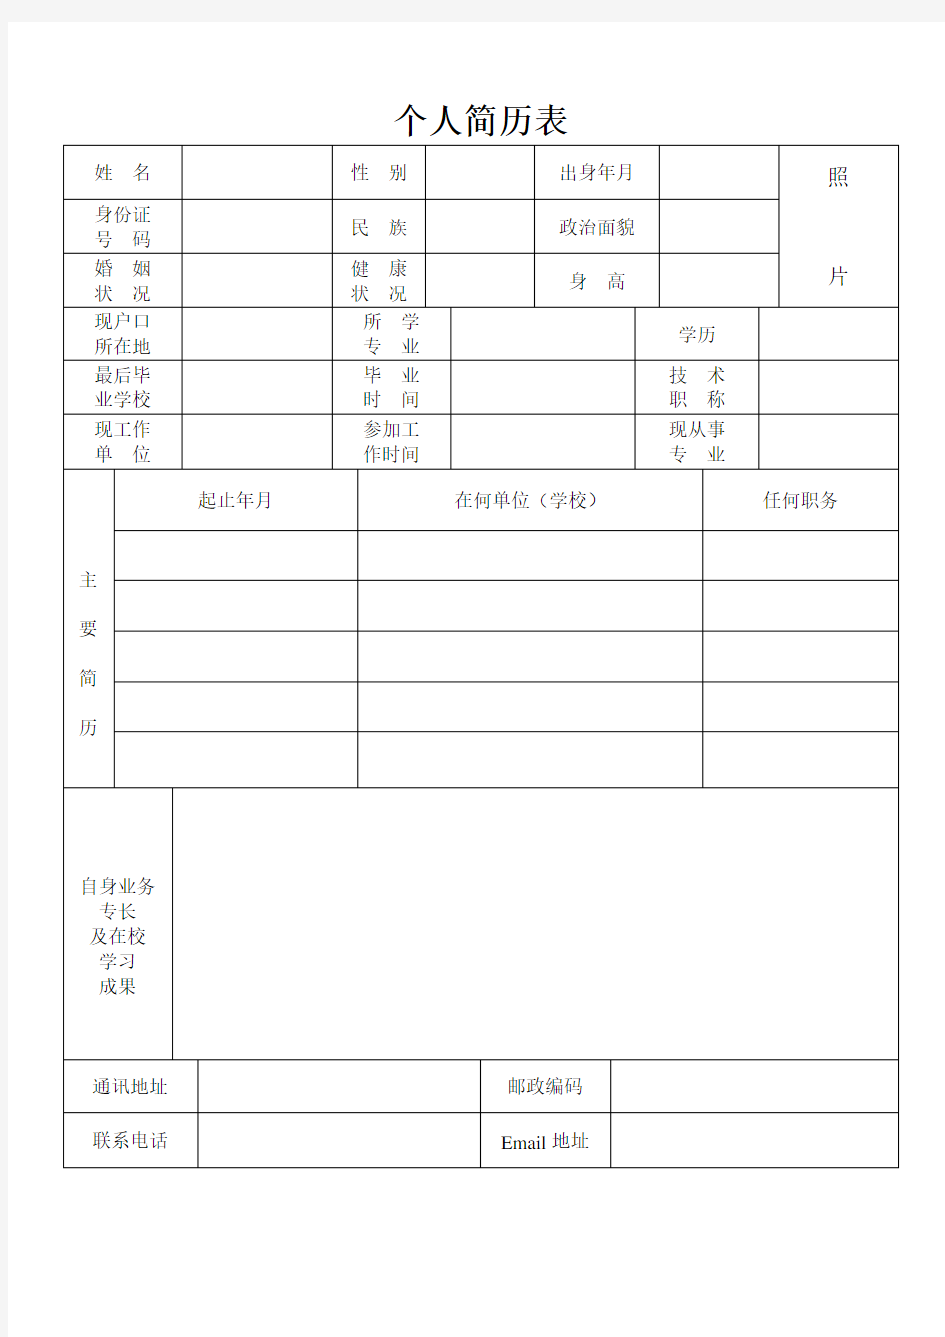 中英文双语版简历模板